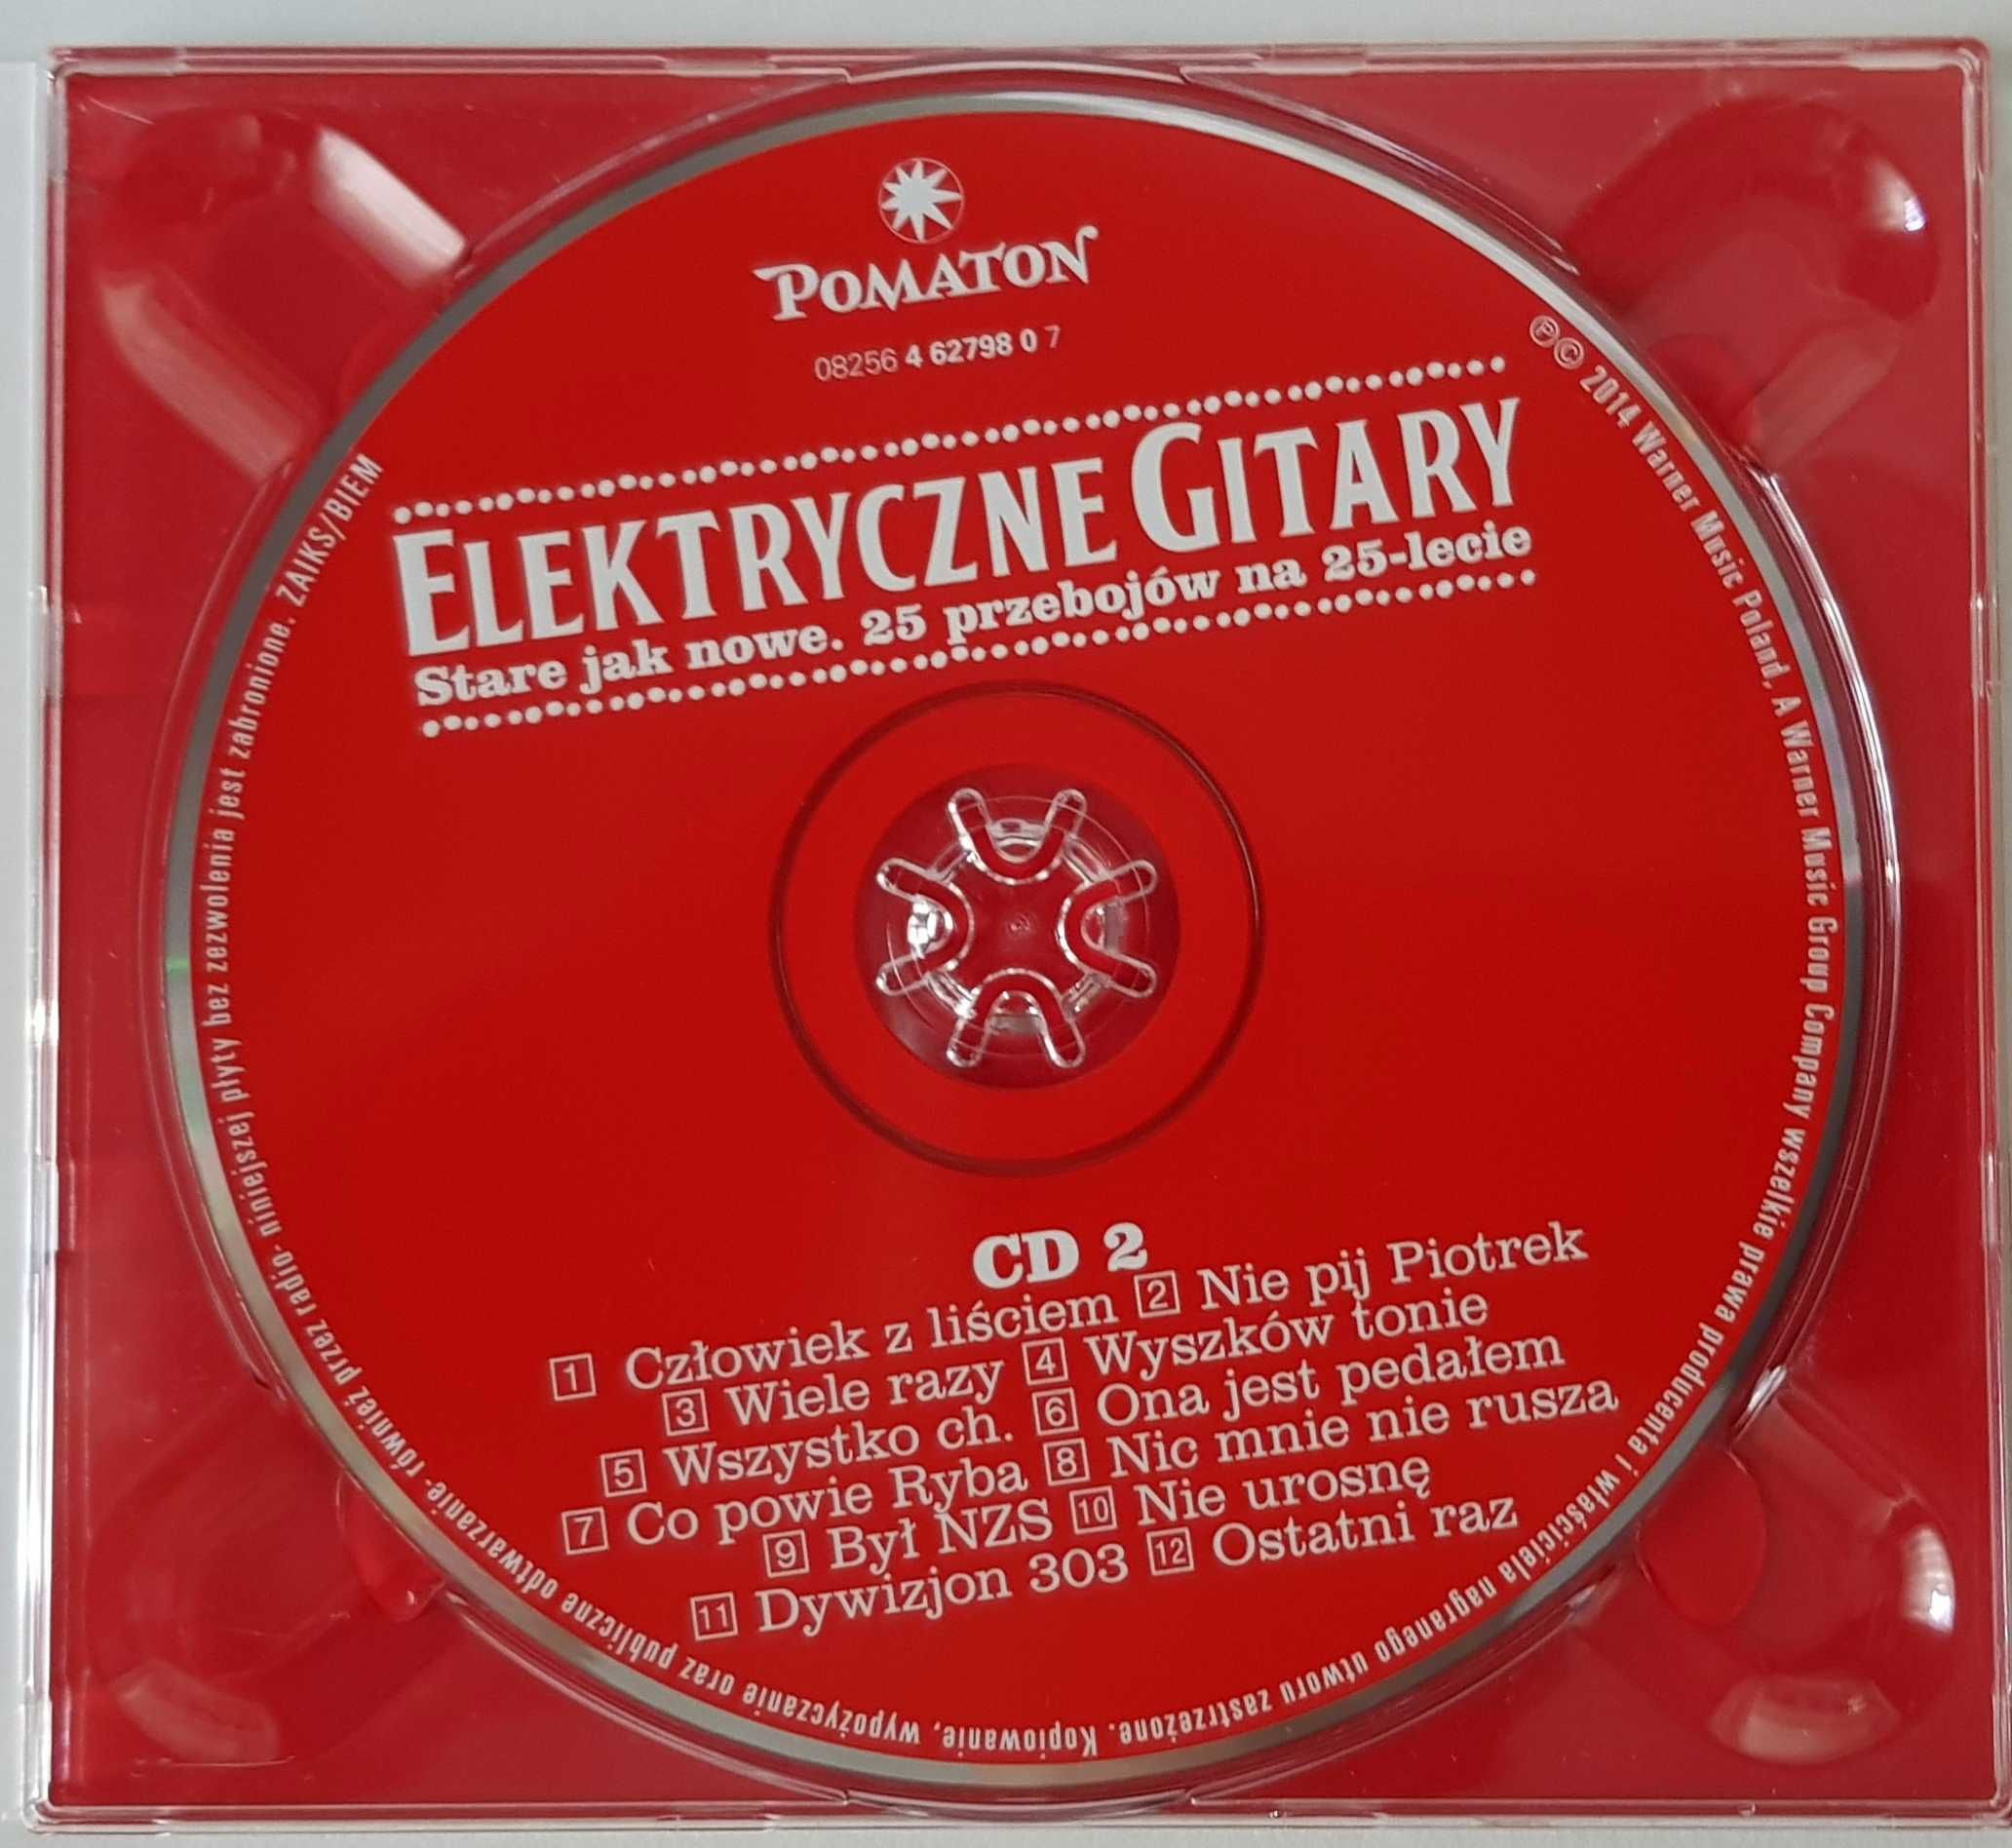 Elektryczne Gitary  Stare Jak Nowe 25 przebojów na 25 Lecie CD Rock